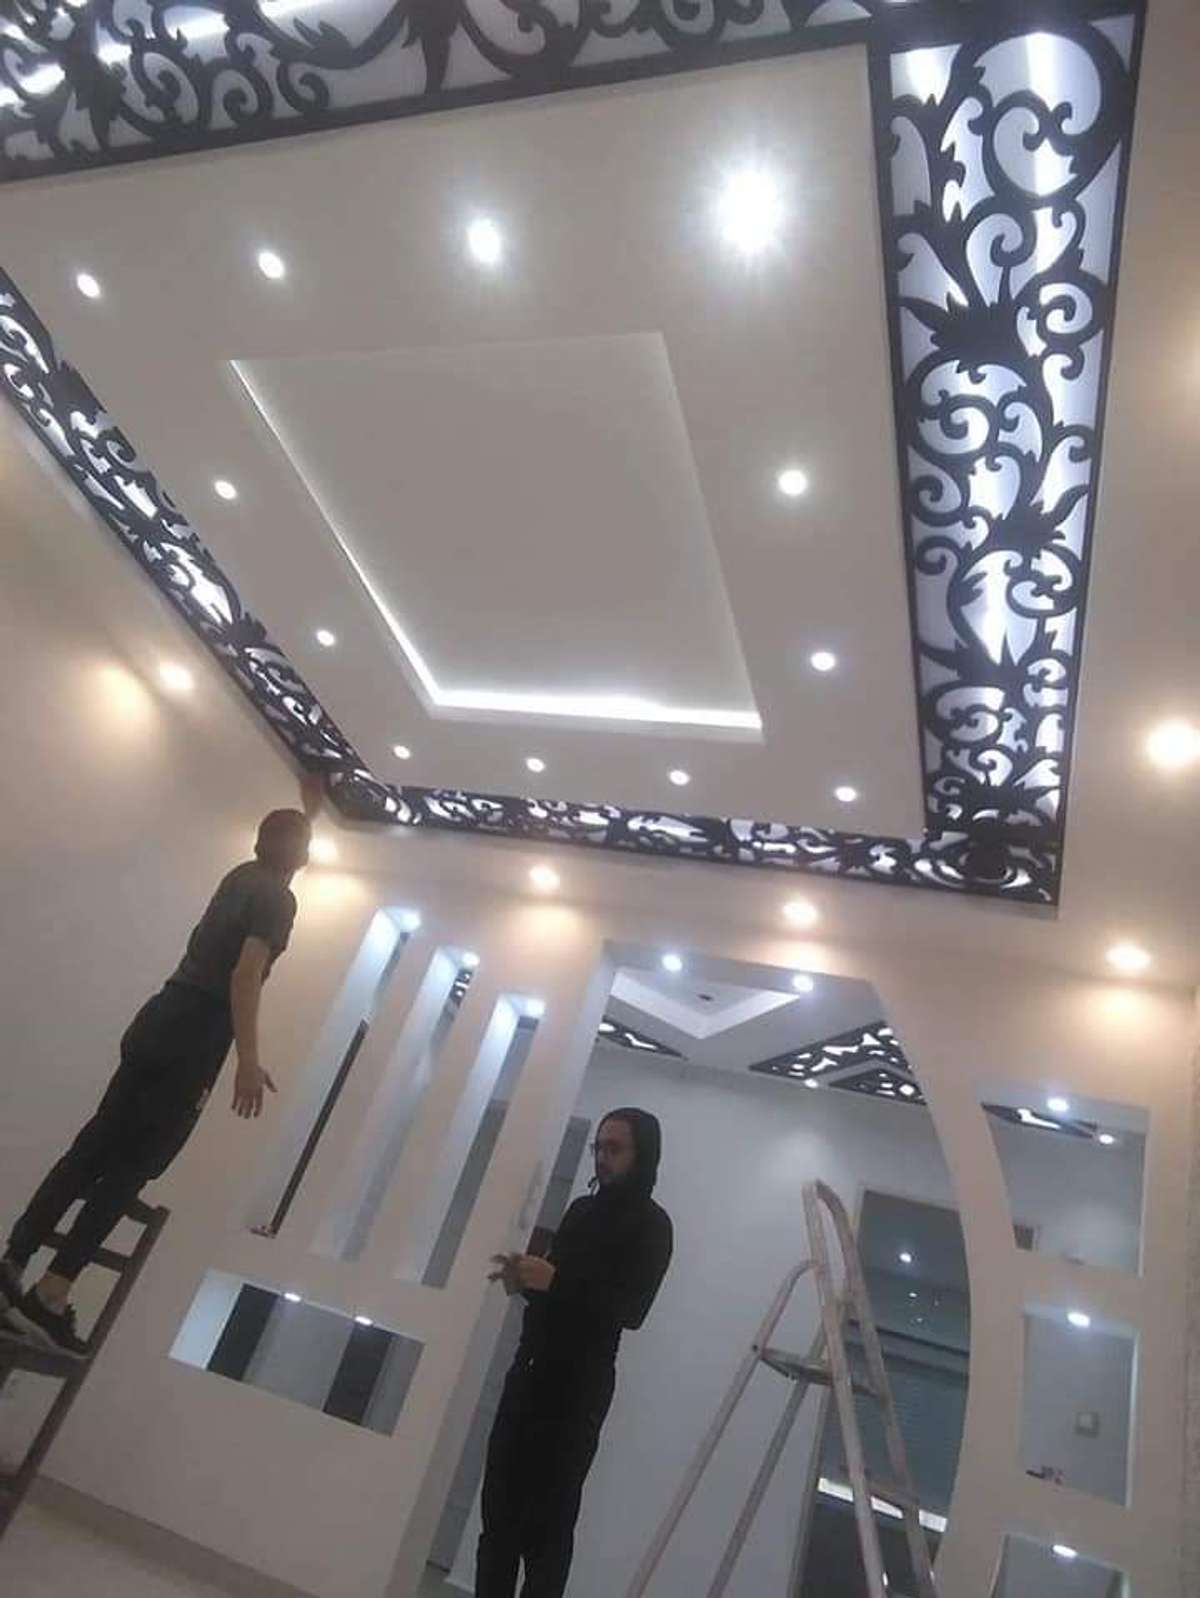 hi gypsum ceiling with multiwood cnc work aanu onnu ellavarum nokane
mob 9567749599